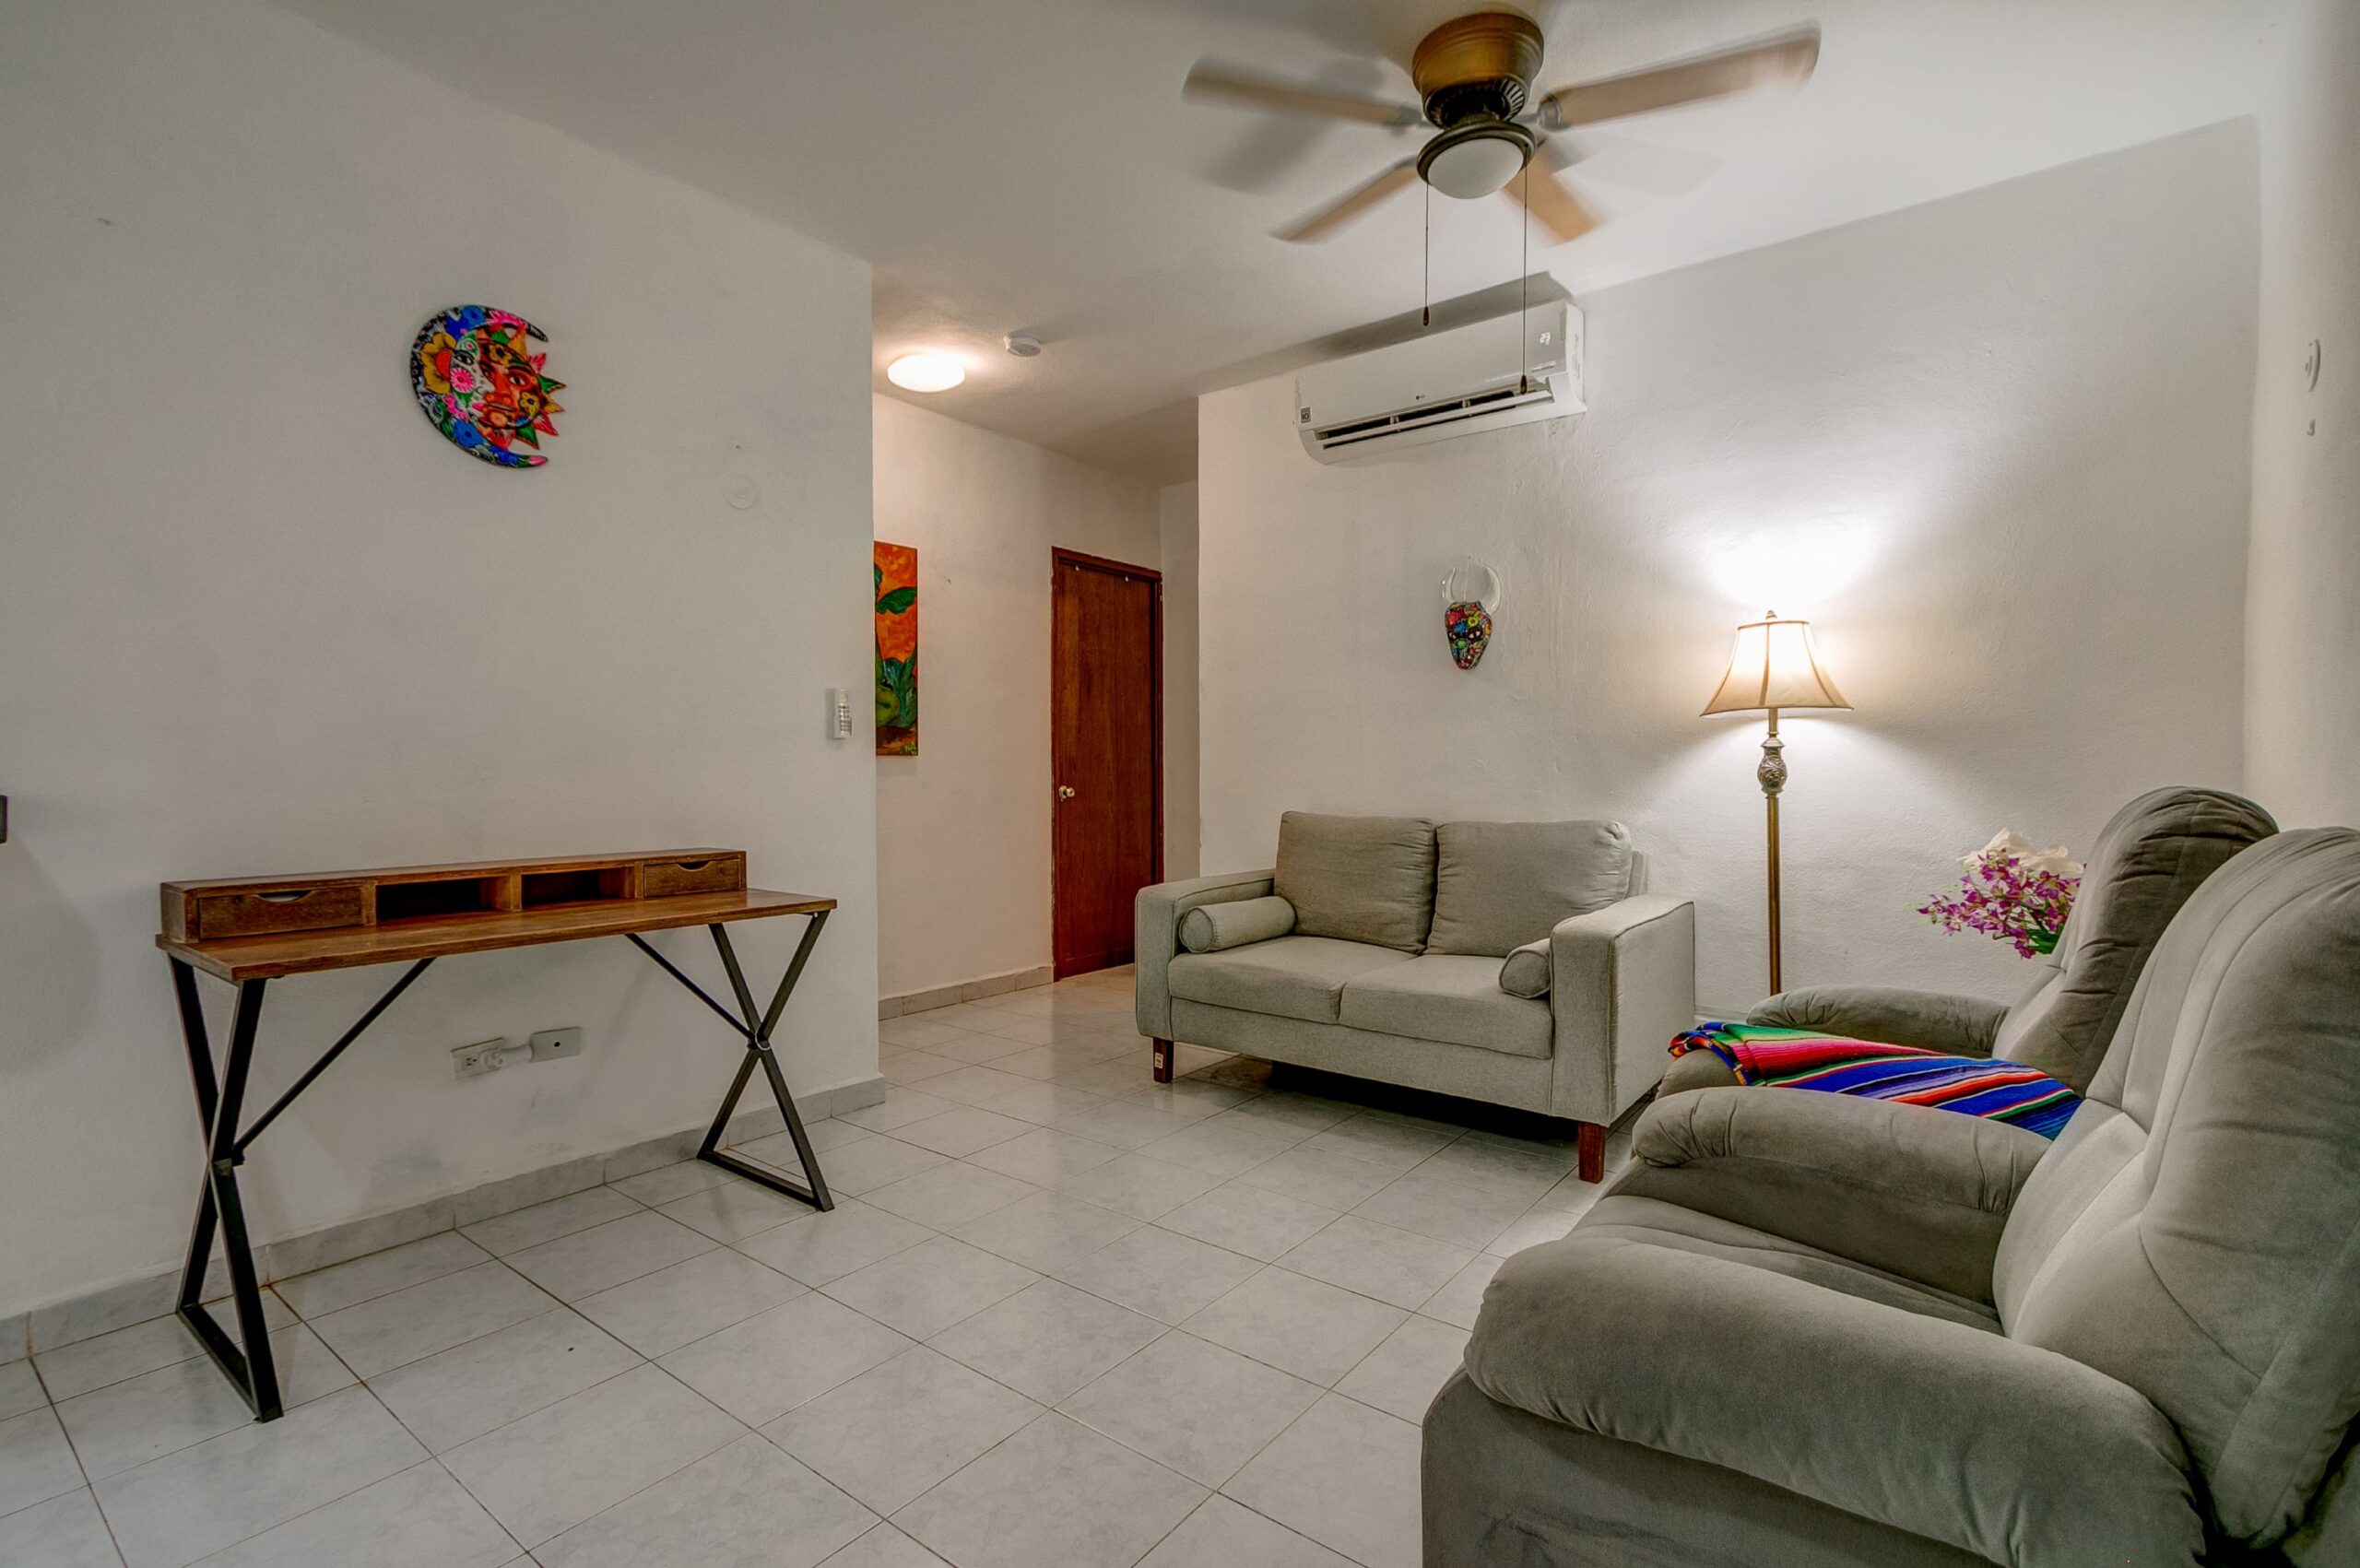 b apartment for sale in playacar gaviotas living room